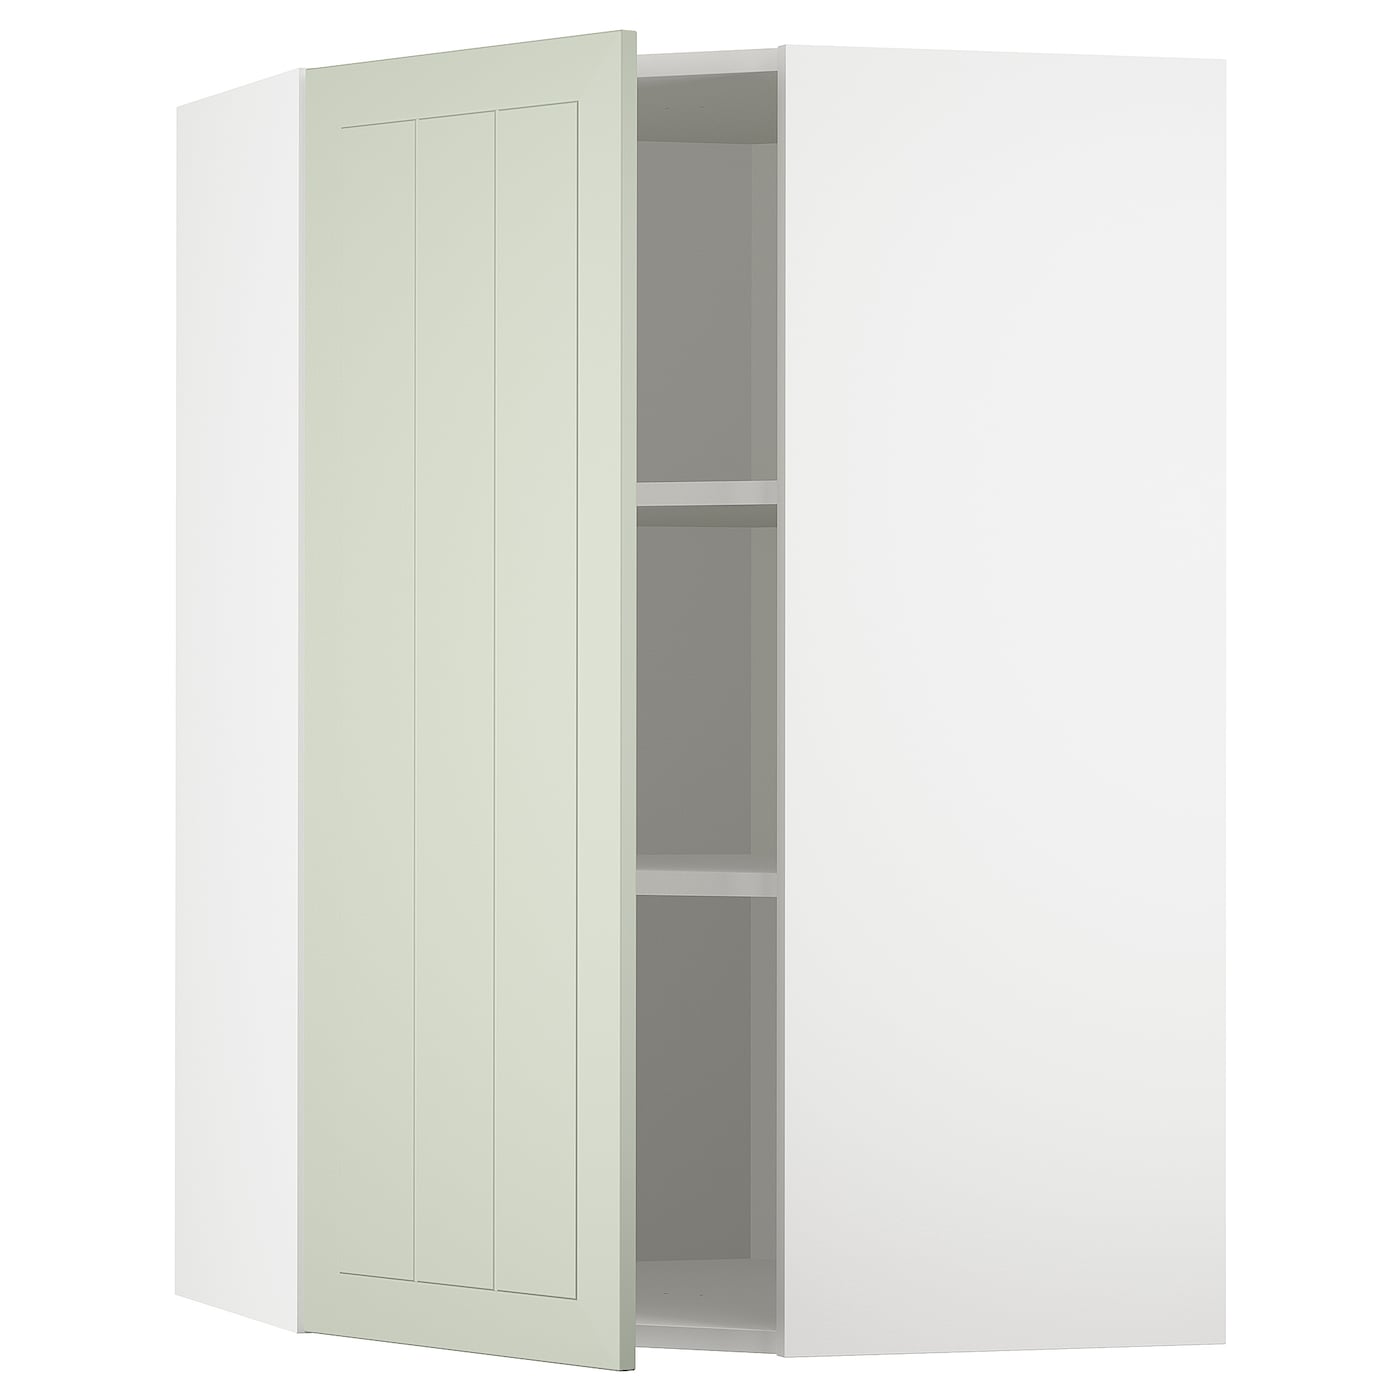 Угловой навесной шкаф с полками - METOD  IKEA/  МЕТОД ИКЕА, 100х68 см, белый/светло-зеленый